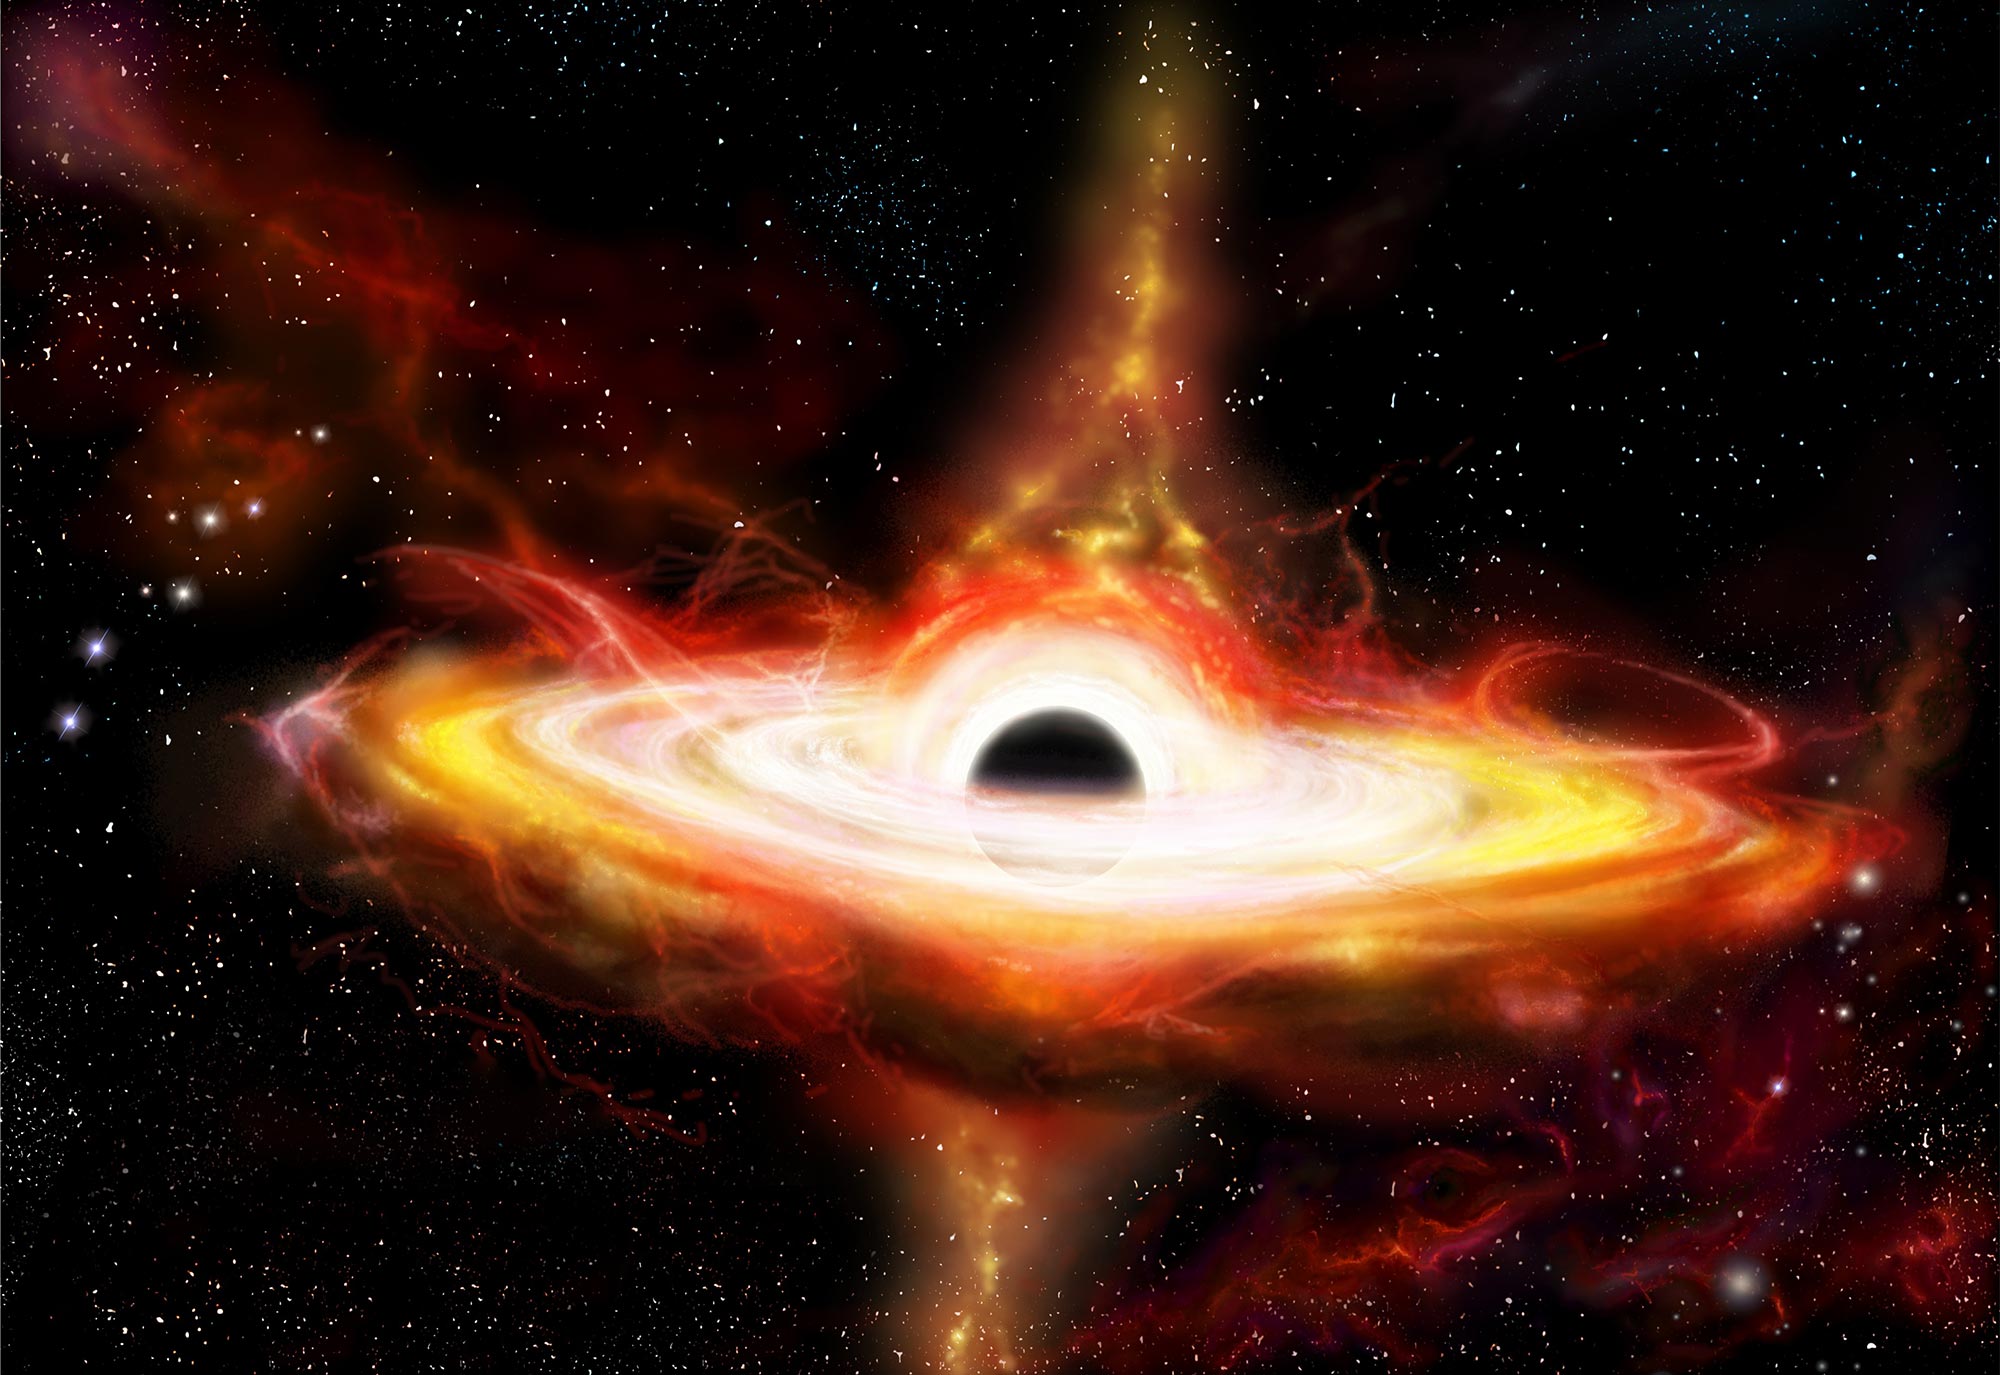 Nachweis eines supermassereichen Schwarzen Lochs mit einer Masse von 30 Milliarden Sonnentermen durch das Phänomen der Lichtkrümmung